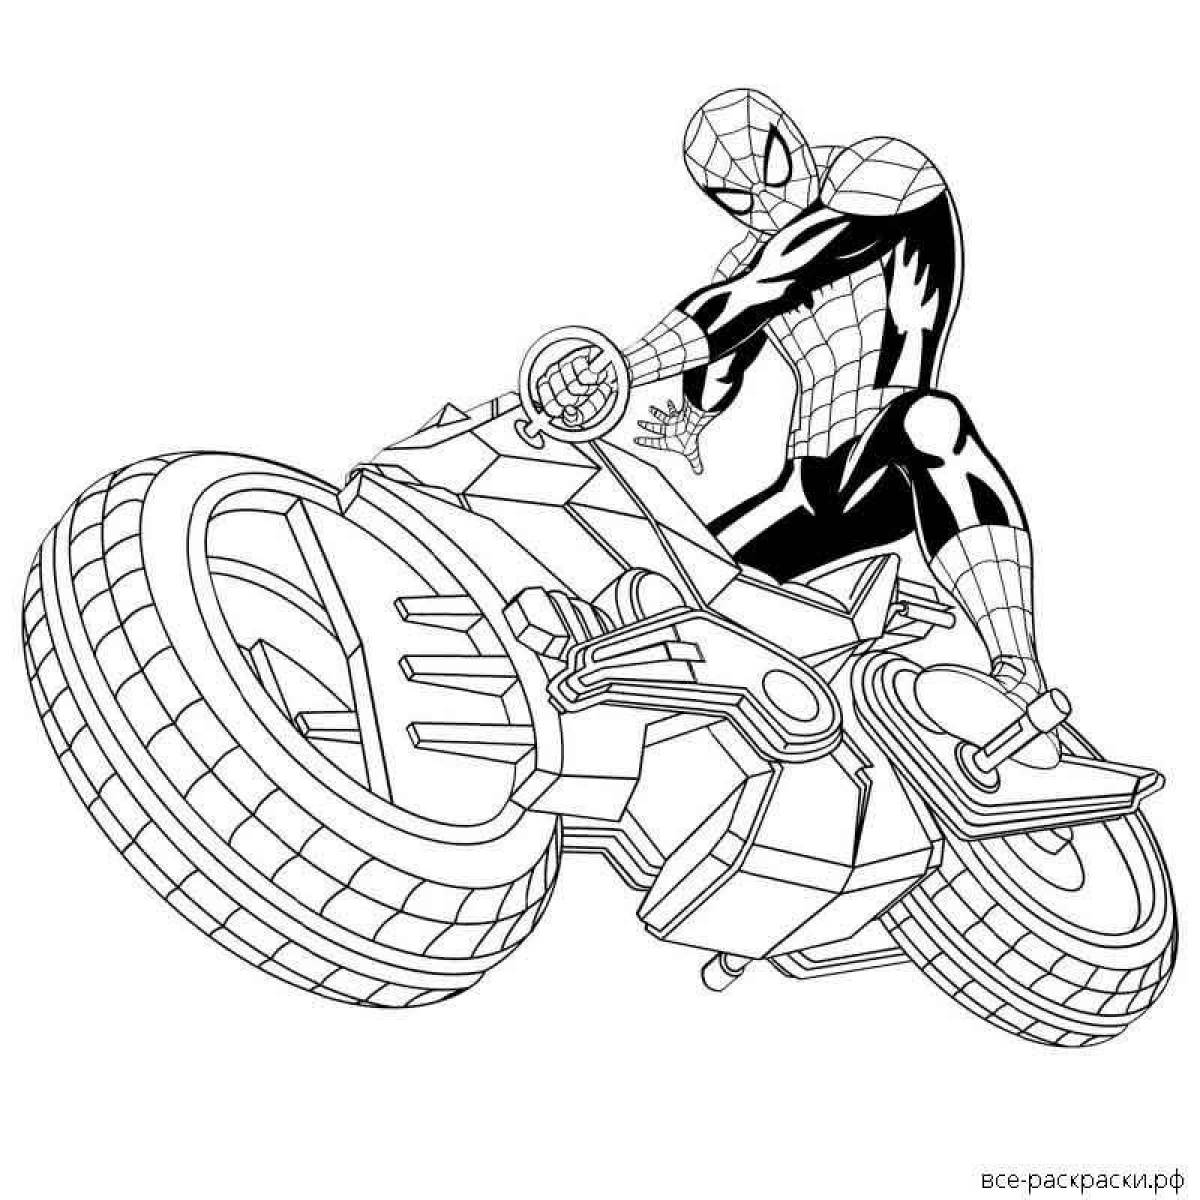 Драматический человек-паук на мотоцикле